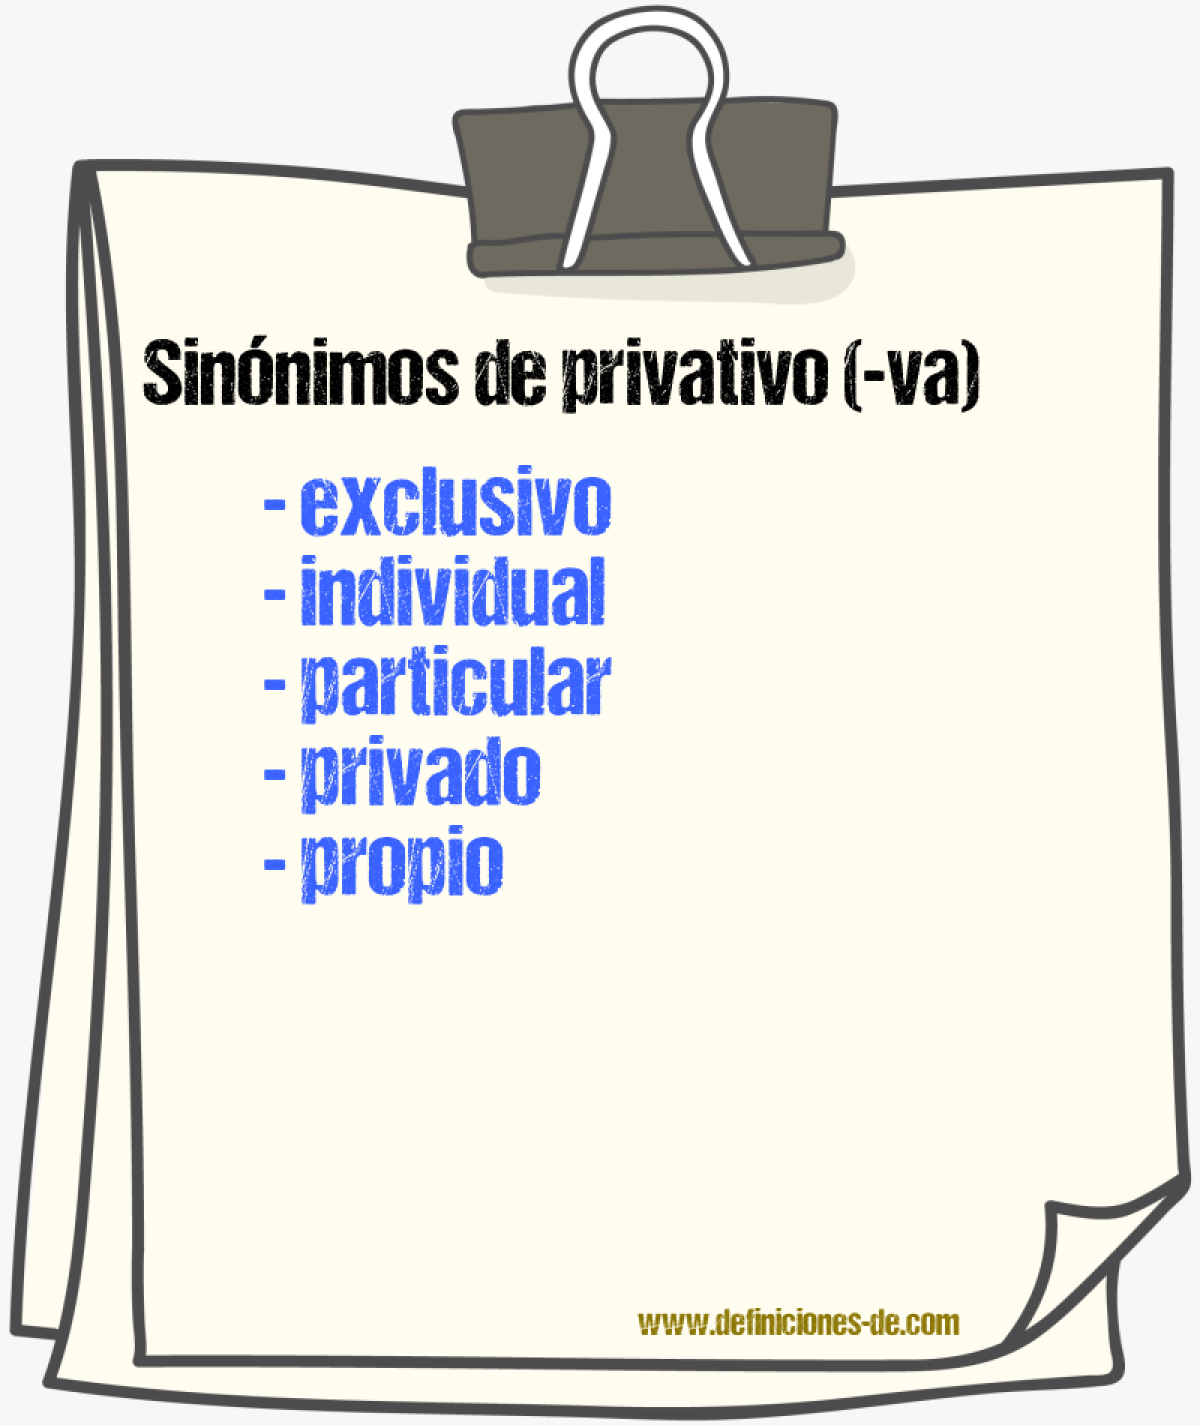 Sinónimos de privativo